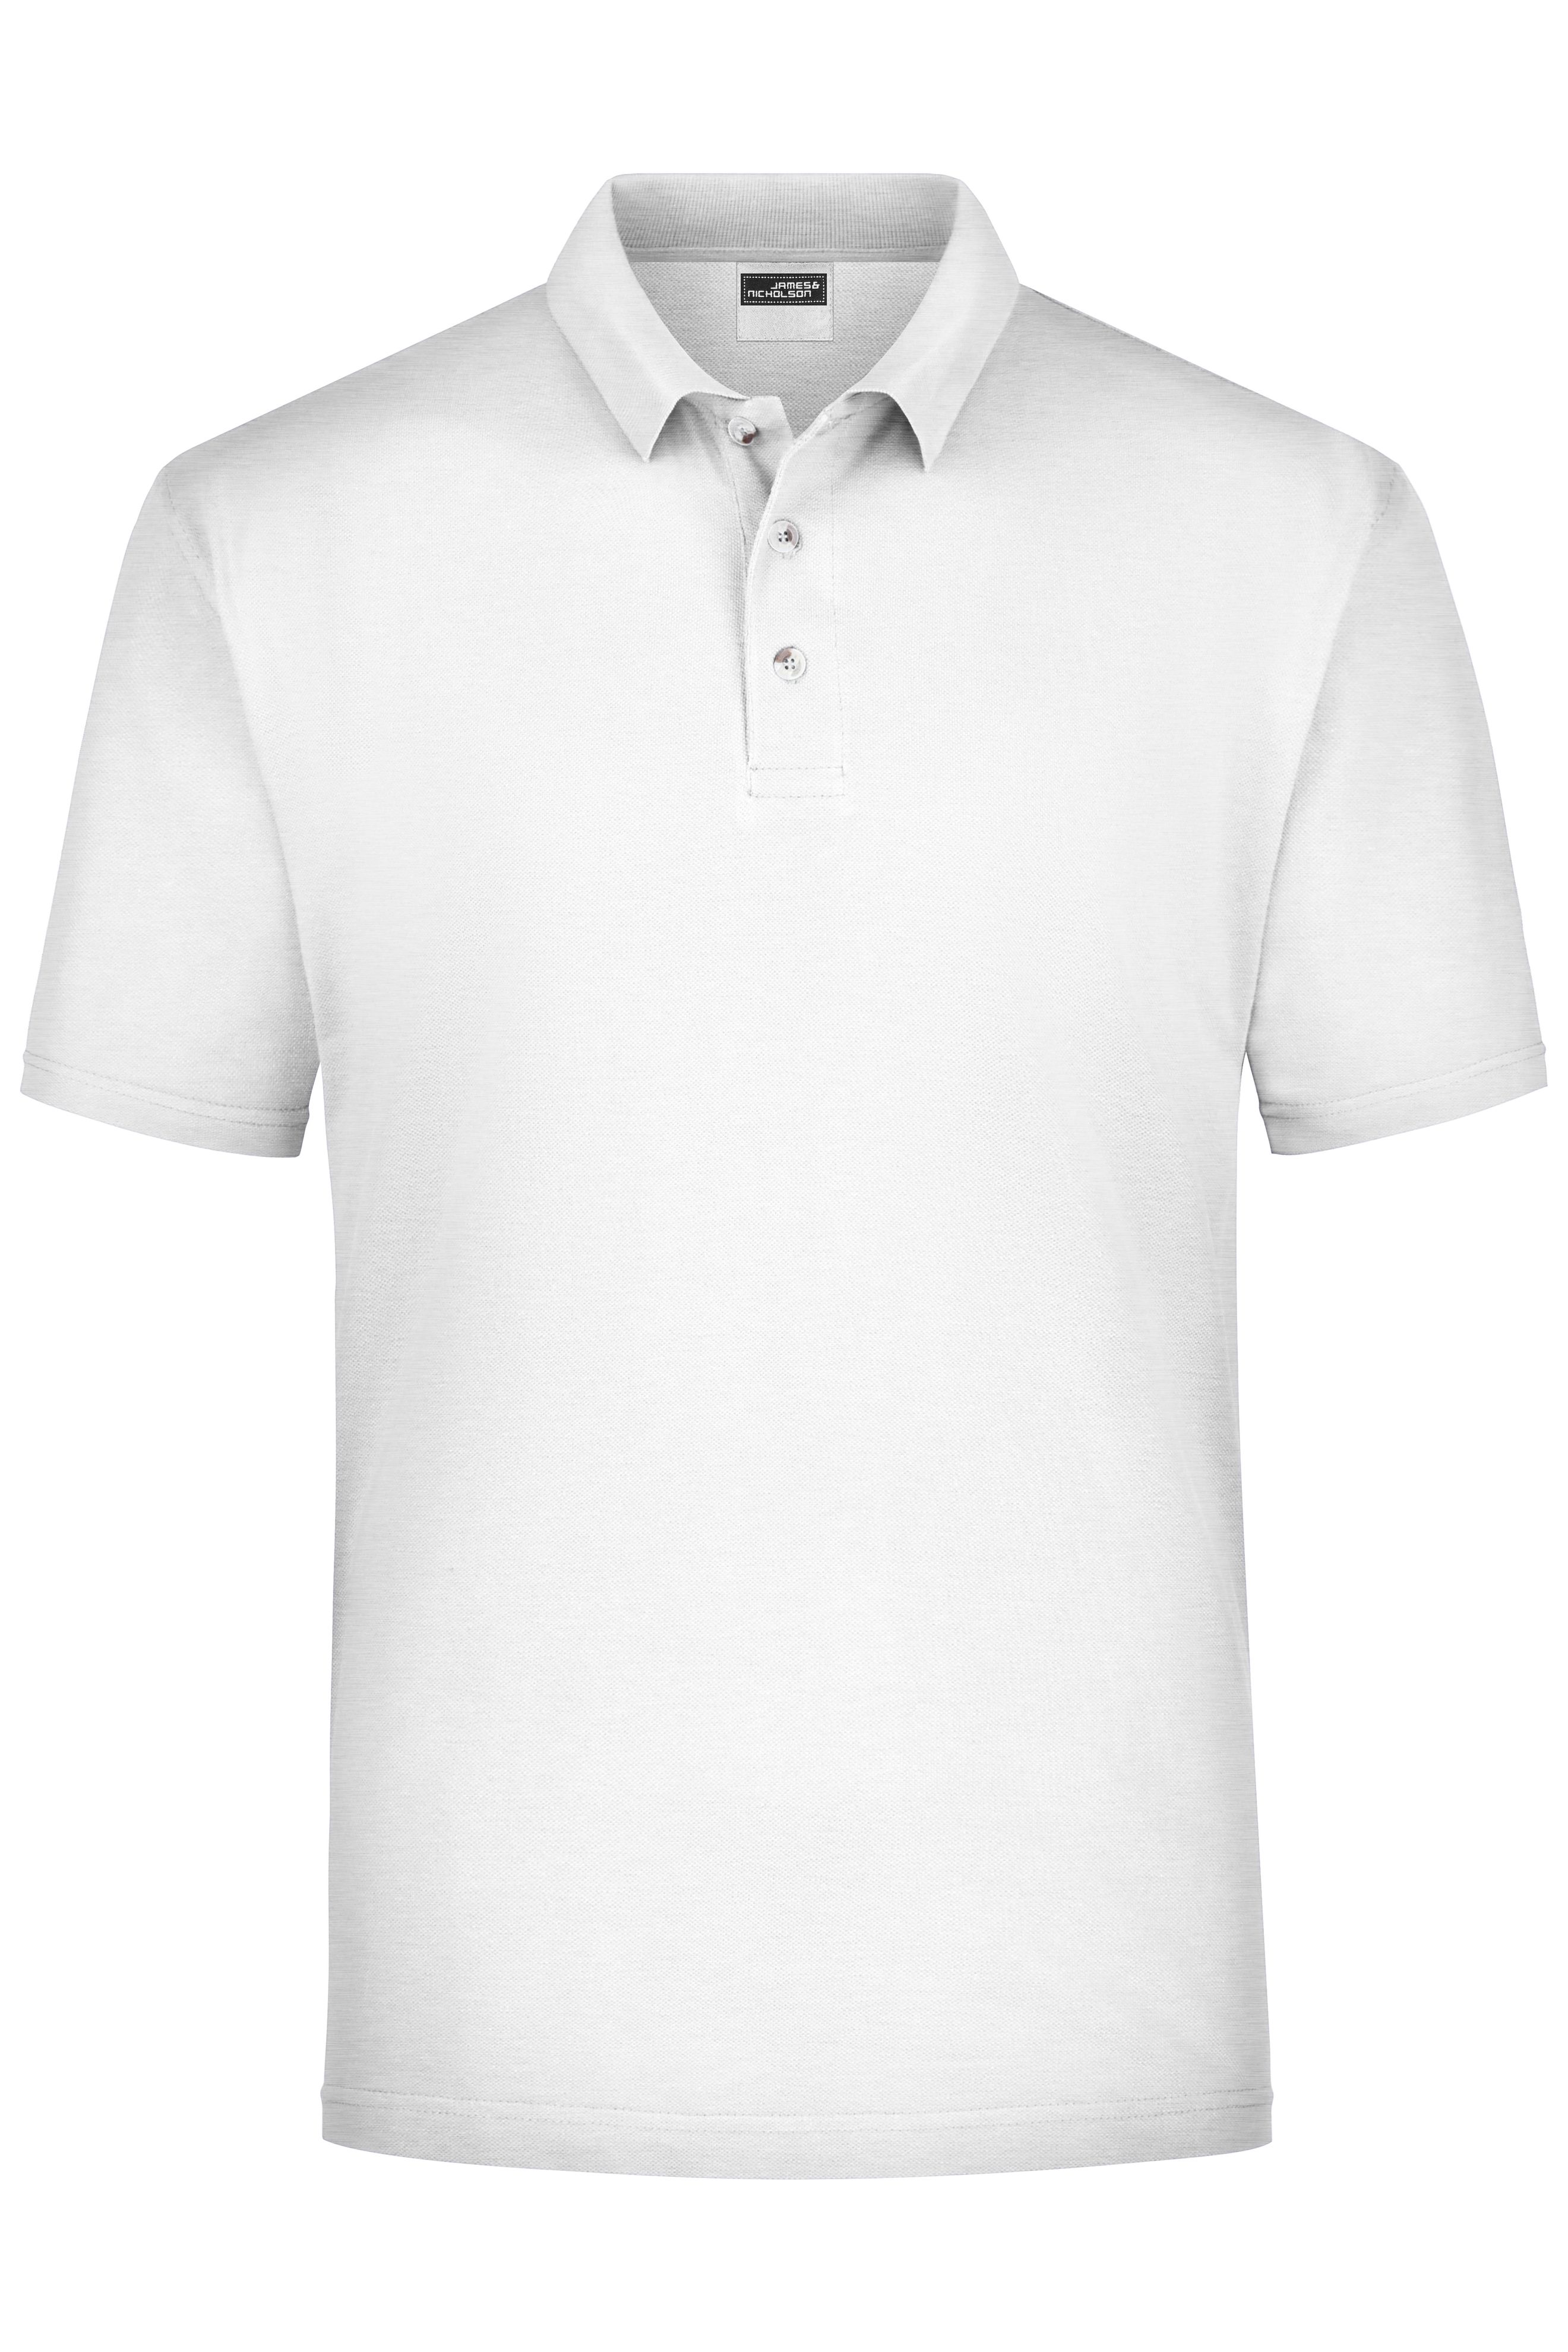 James & Nicholson Herren Kurzarm Polo T-Shirt verschiedene Farben und Gr S-XXL